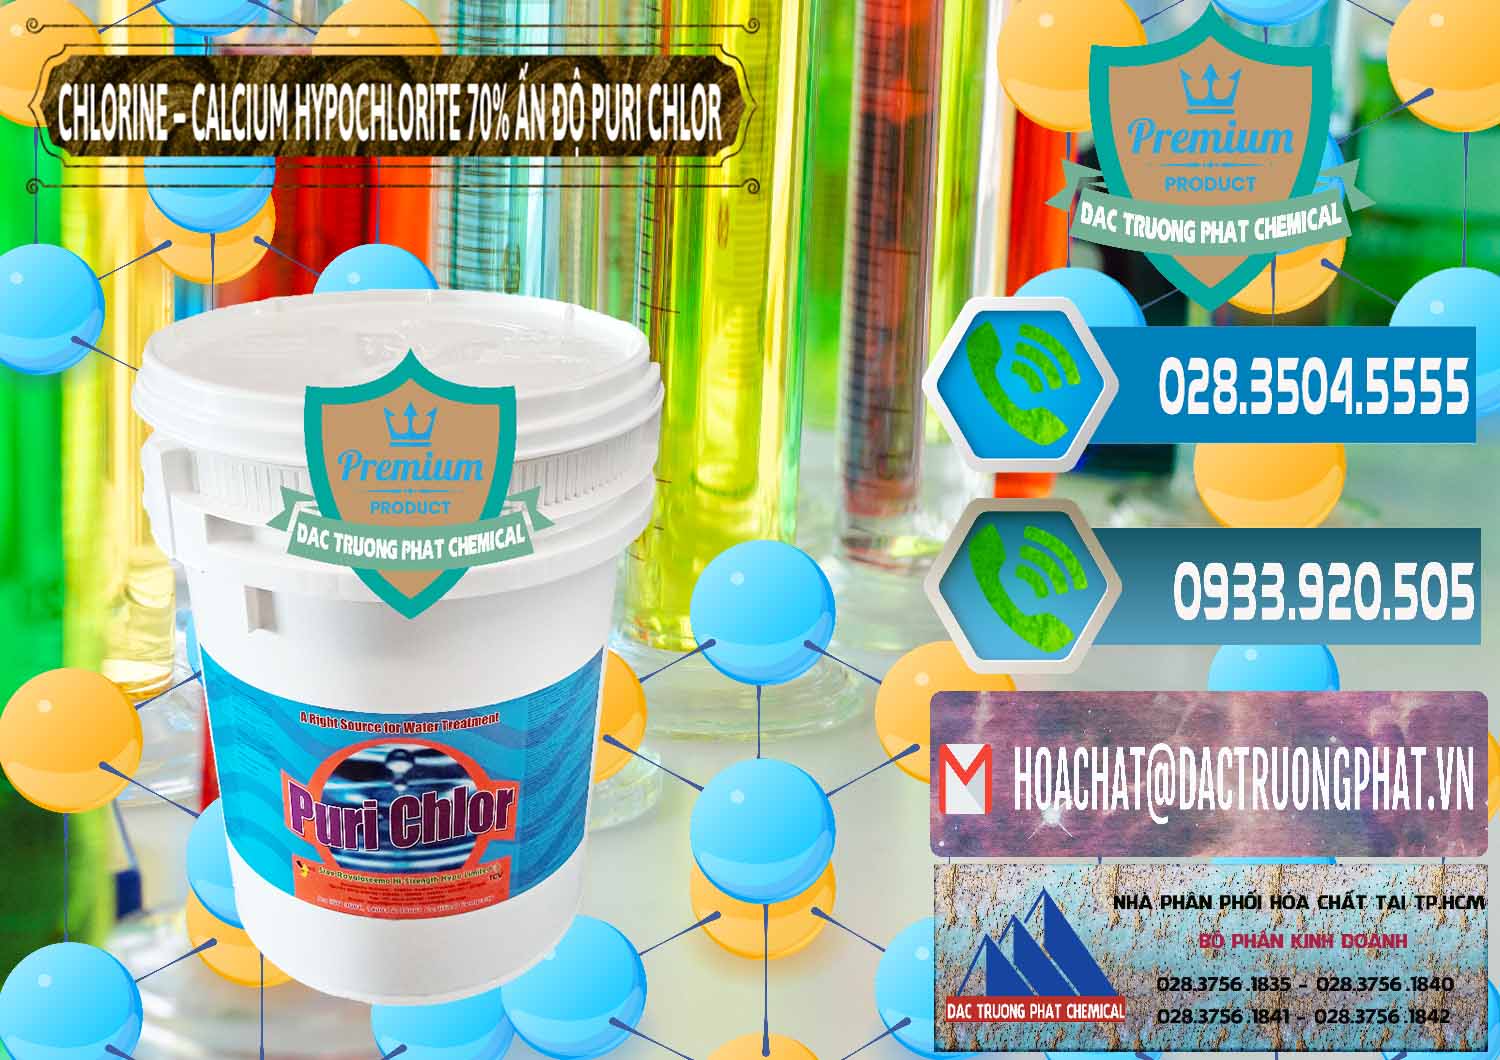 Cty chuyên bán & cung ứng Chlorine – Clorin 70% Puri Chlo Ấn Độ India - 0123 - Nhà phân phối _ nhập khẩu hóa chất tại TP.HCM - congtyhoachat.net